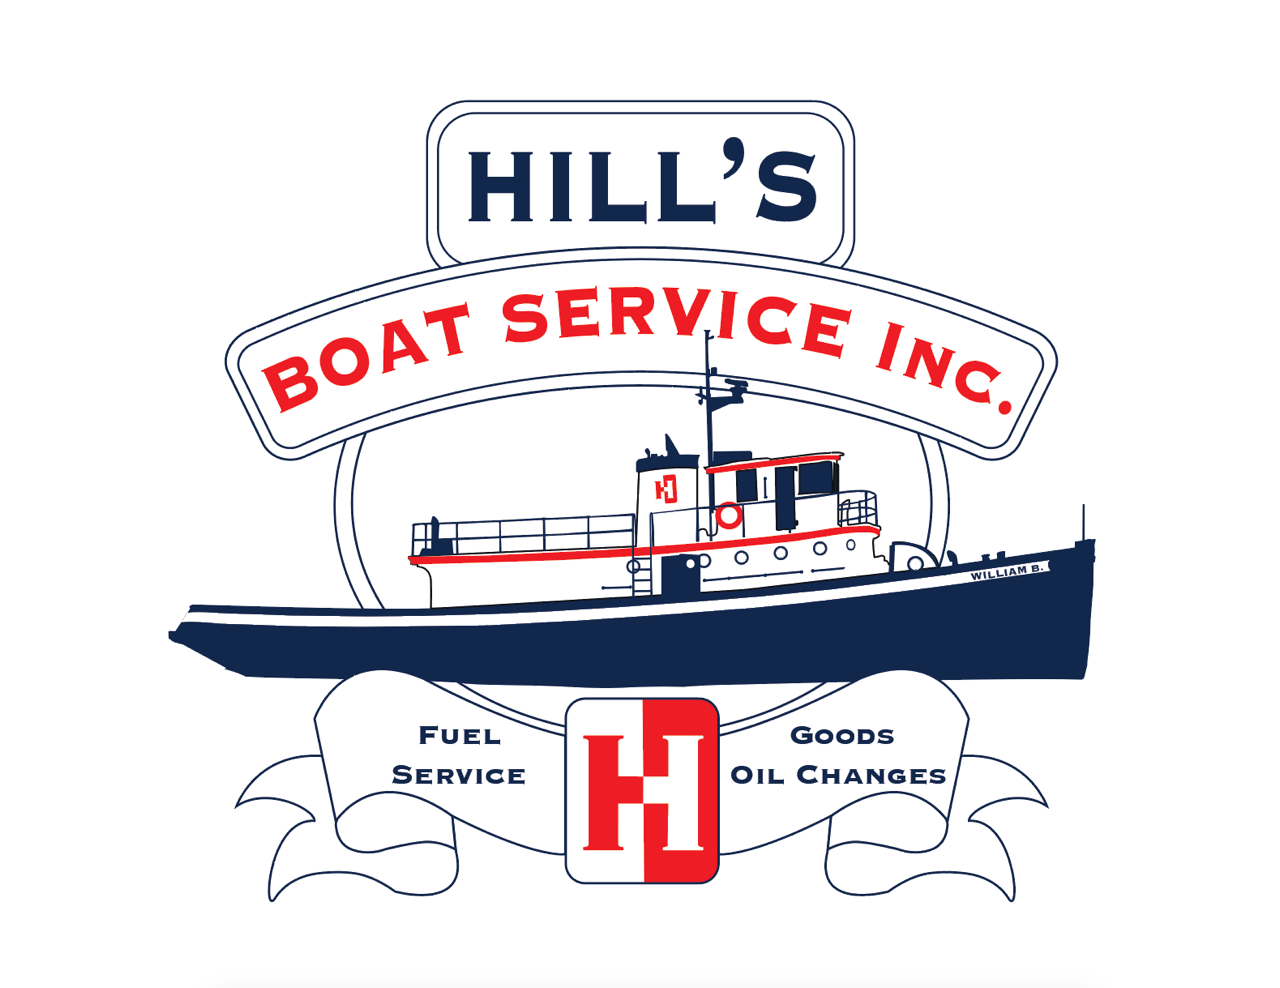 Hill's Boat Service